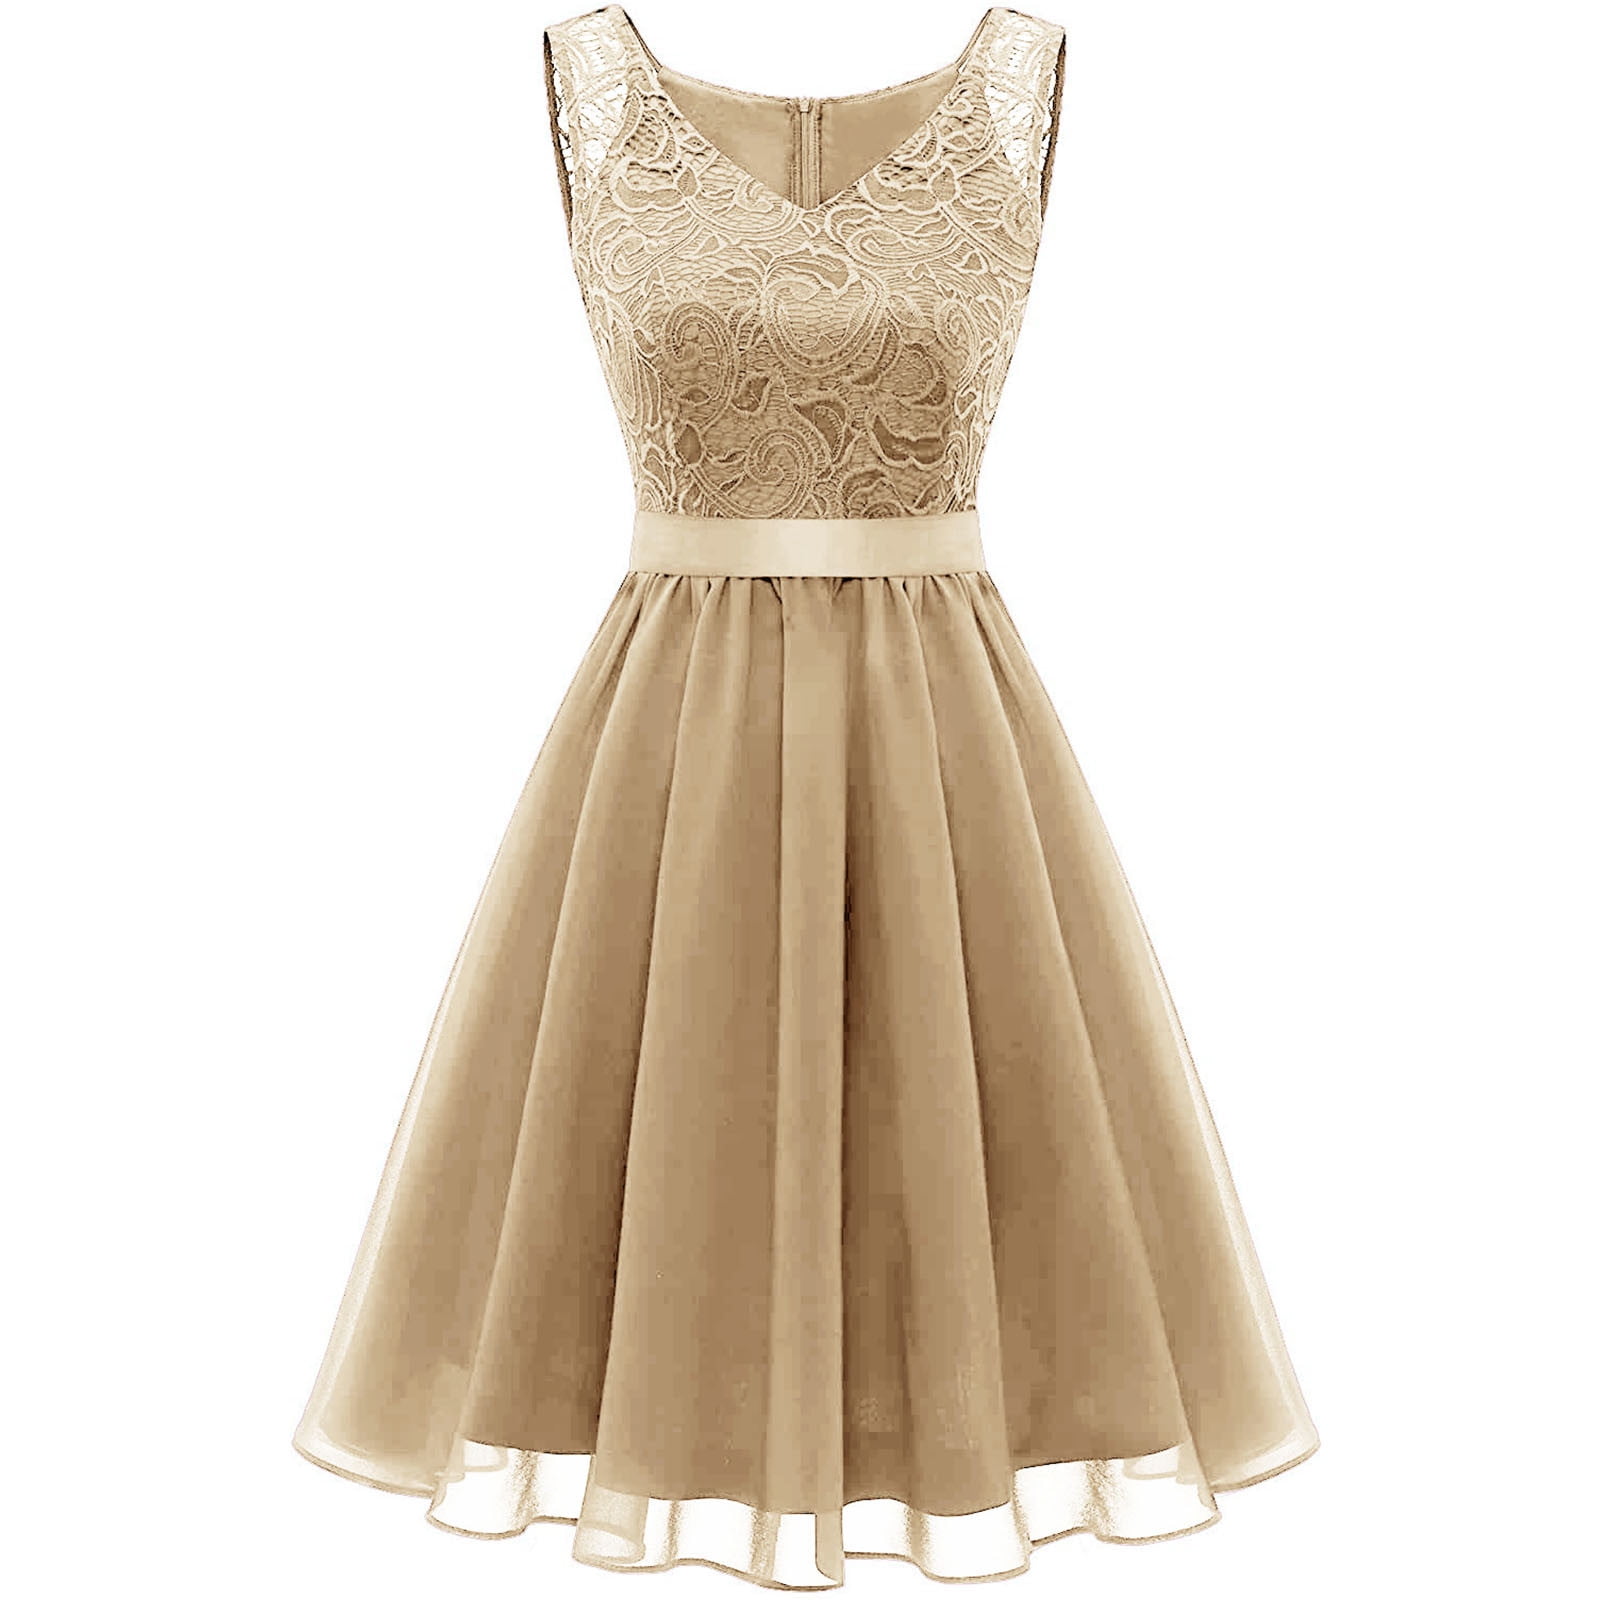 cream colored dress